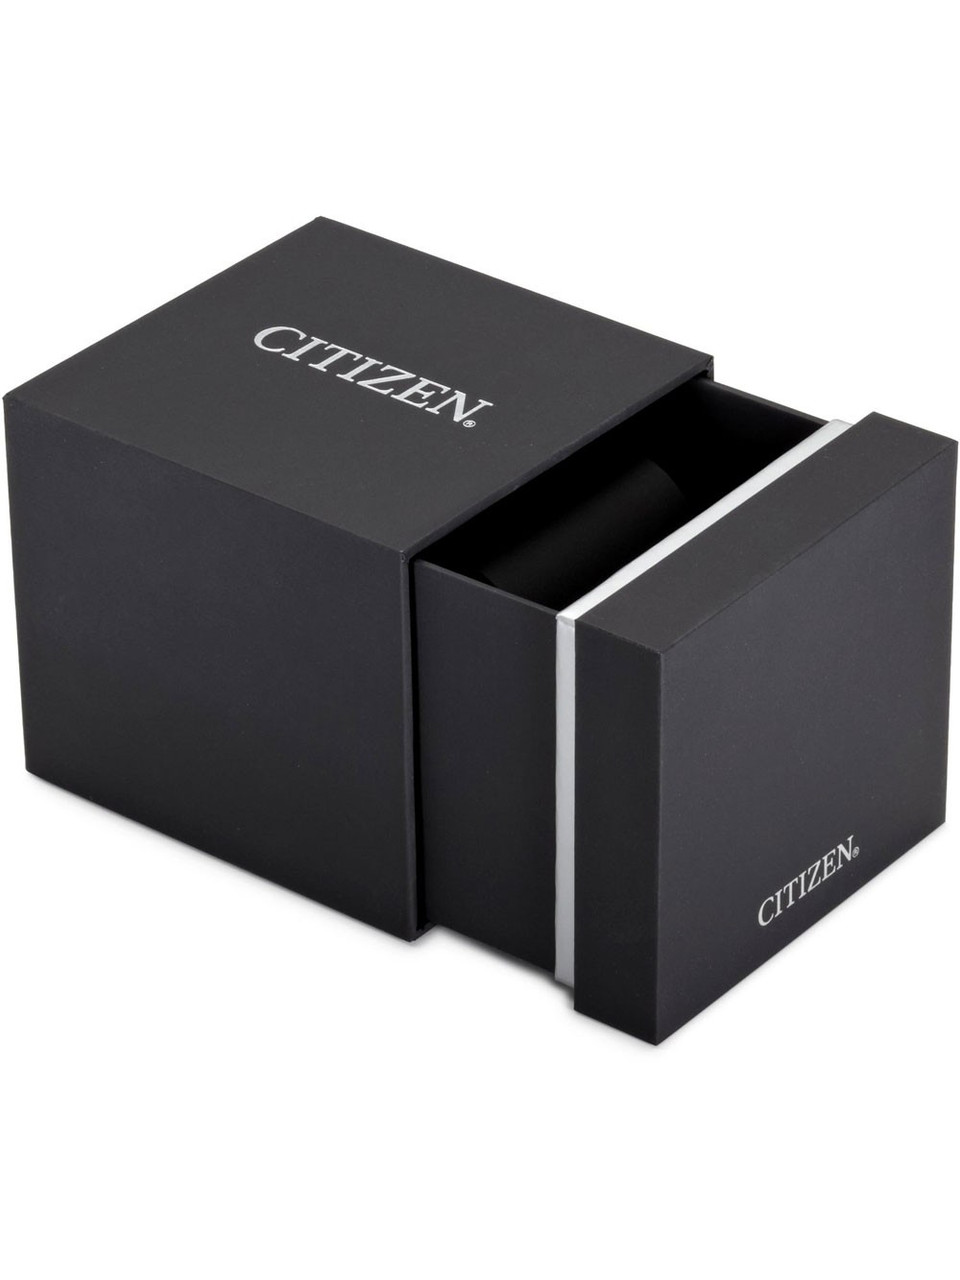 Citizen CA4471-80L Eco-Drive chrono owlica Watches 44 10ATM | Genuine 